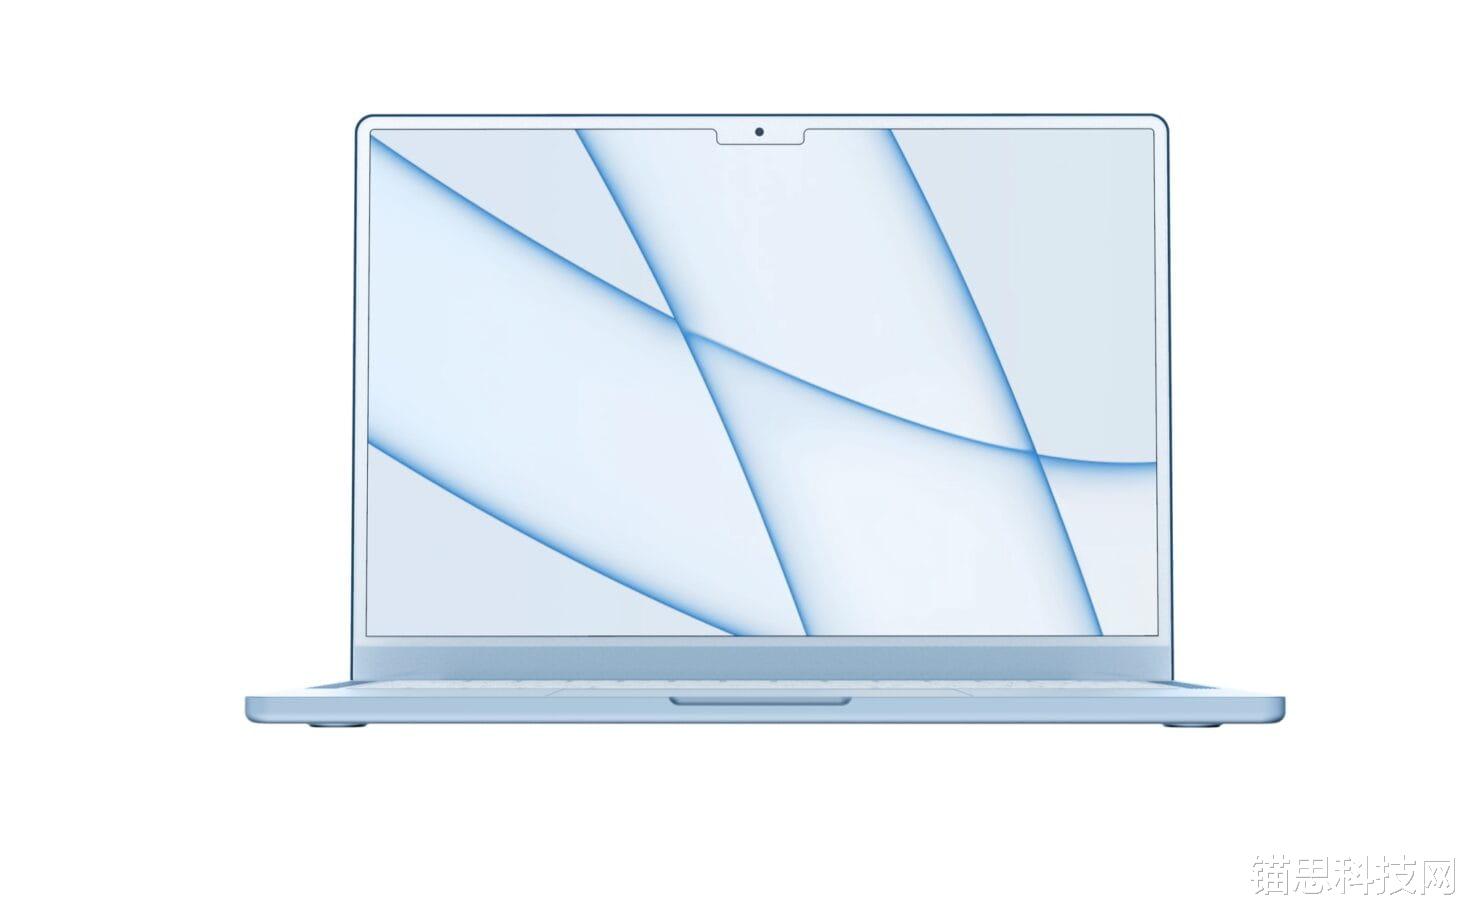 全新MacBook Air或是WWDC 22最大亮点